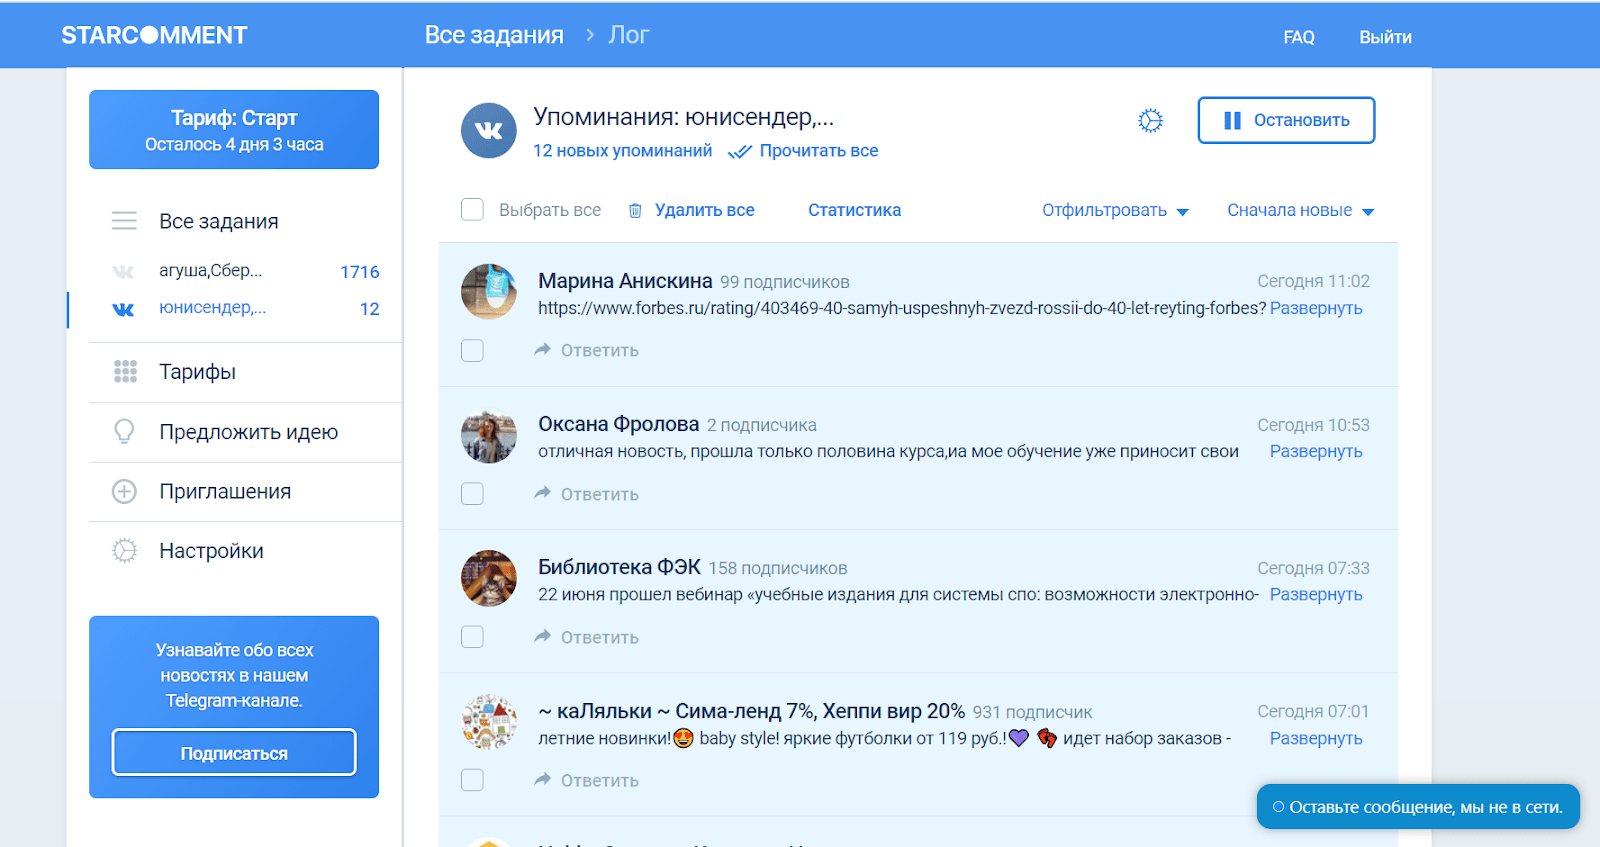 Список упоминаний во ВКонтакте